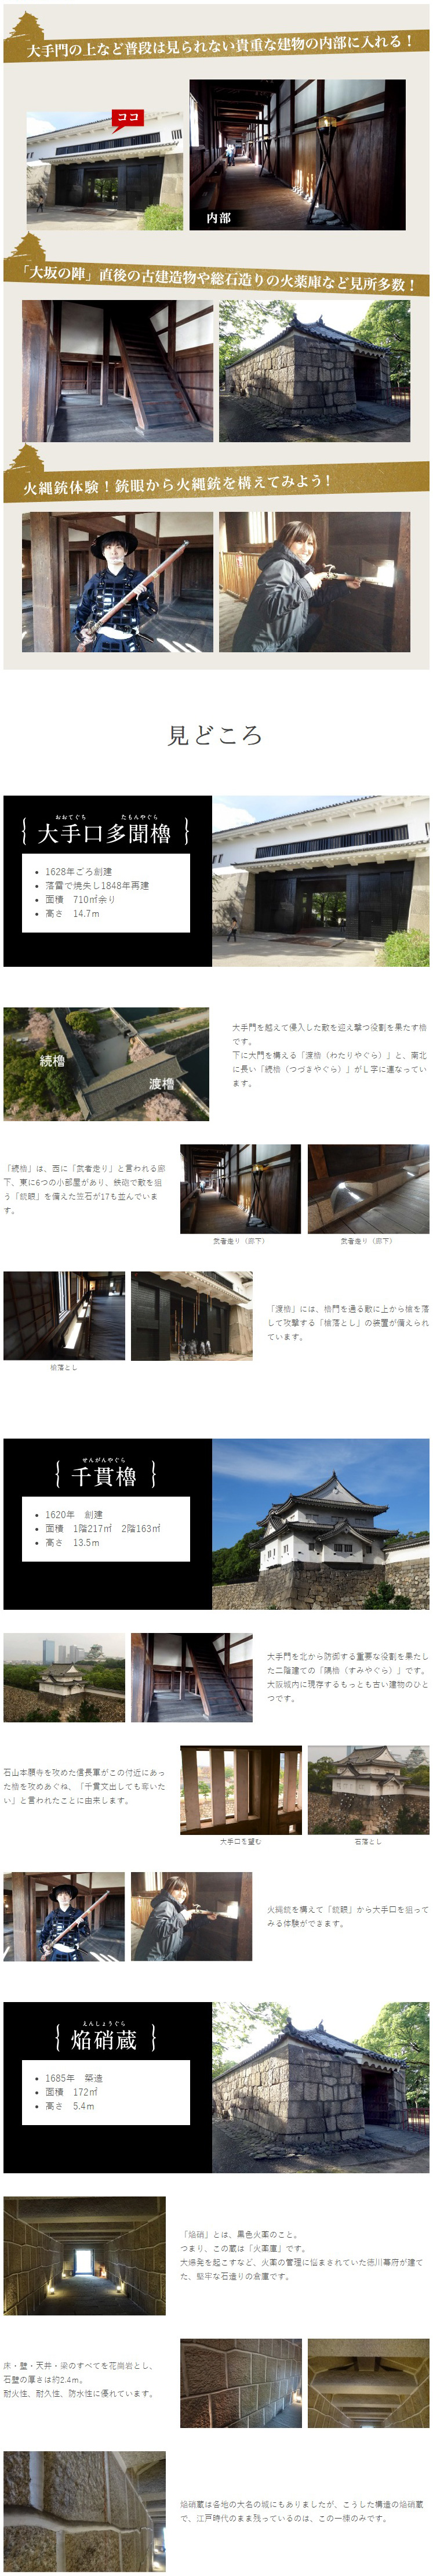 重要文化財 大阪城の櫓 Yagura 特別公開 特別史跡 大阪城公園